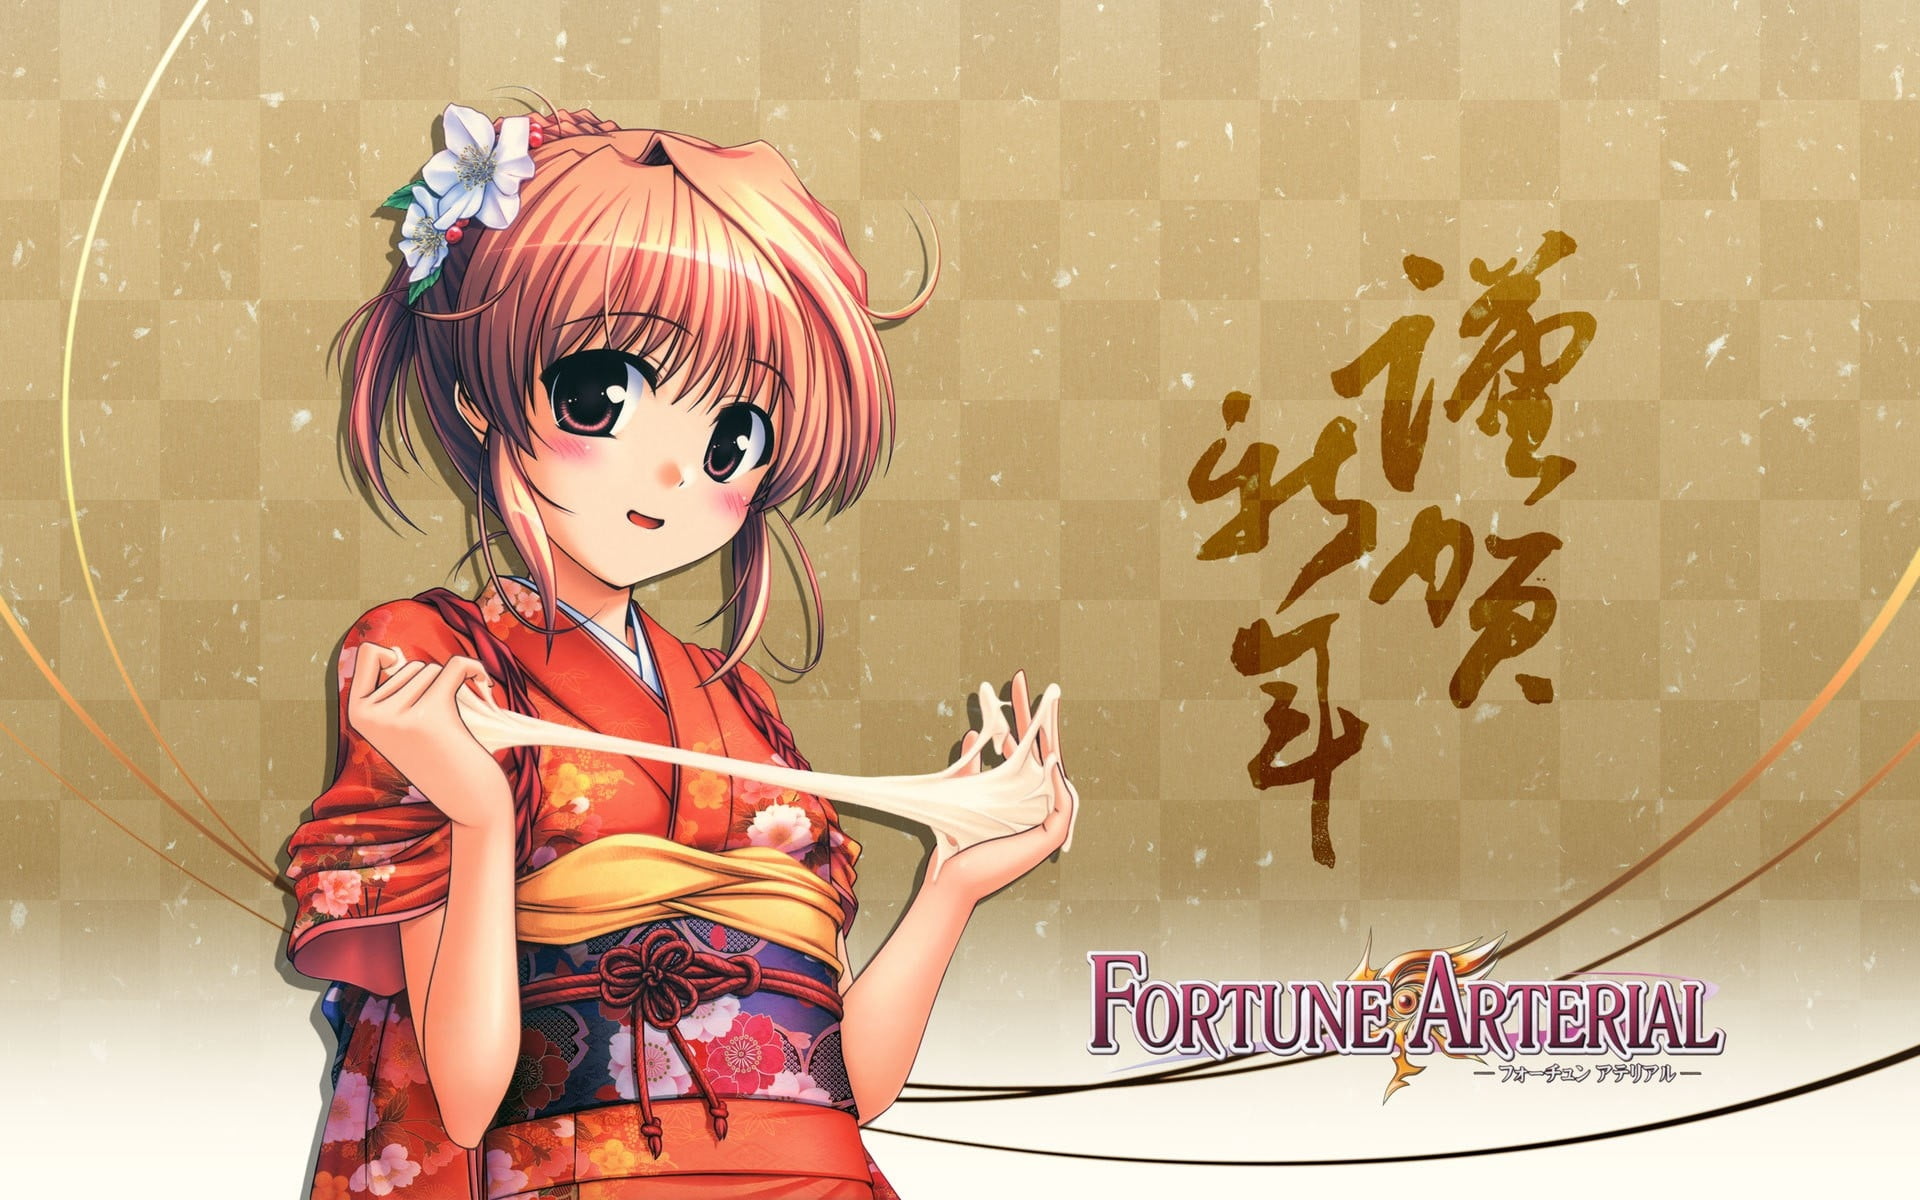 Fortune Arterial anime, girl, brunette, smile, kimonos, dough